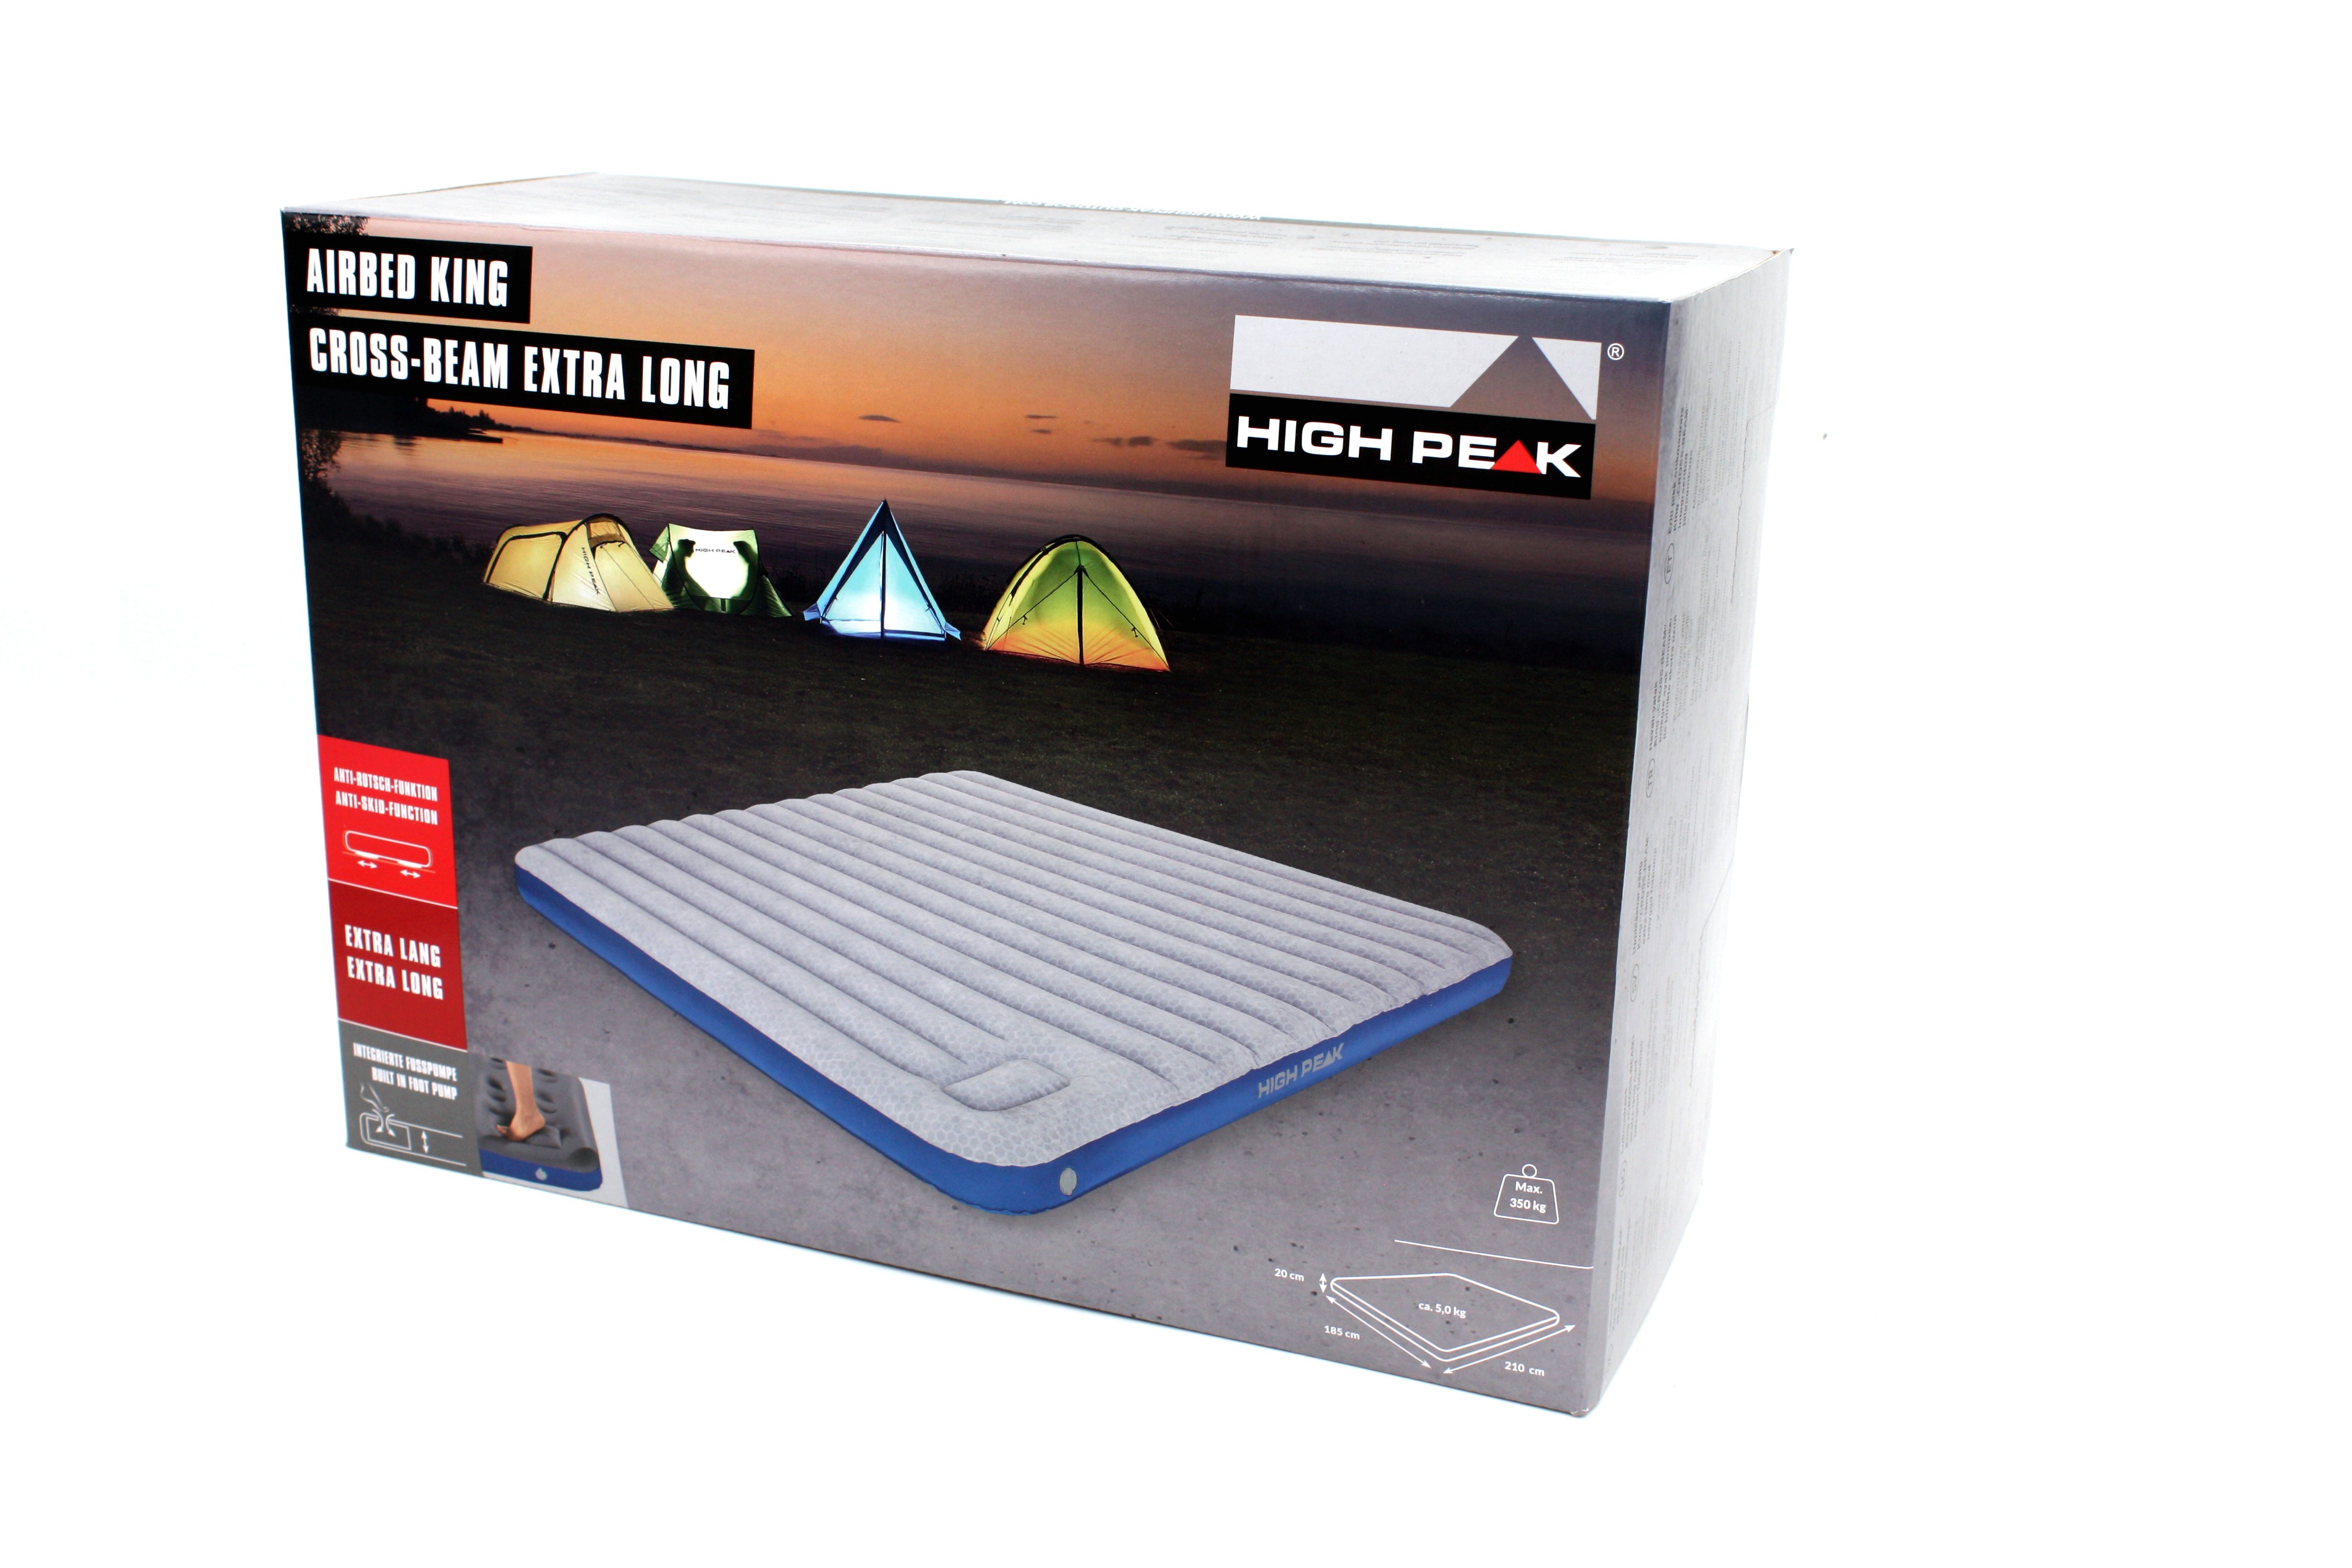 Огромная надувная кровать для отдыха на природе High Peak Air bed Cross Beam King XL